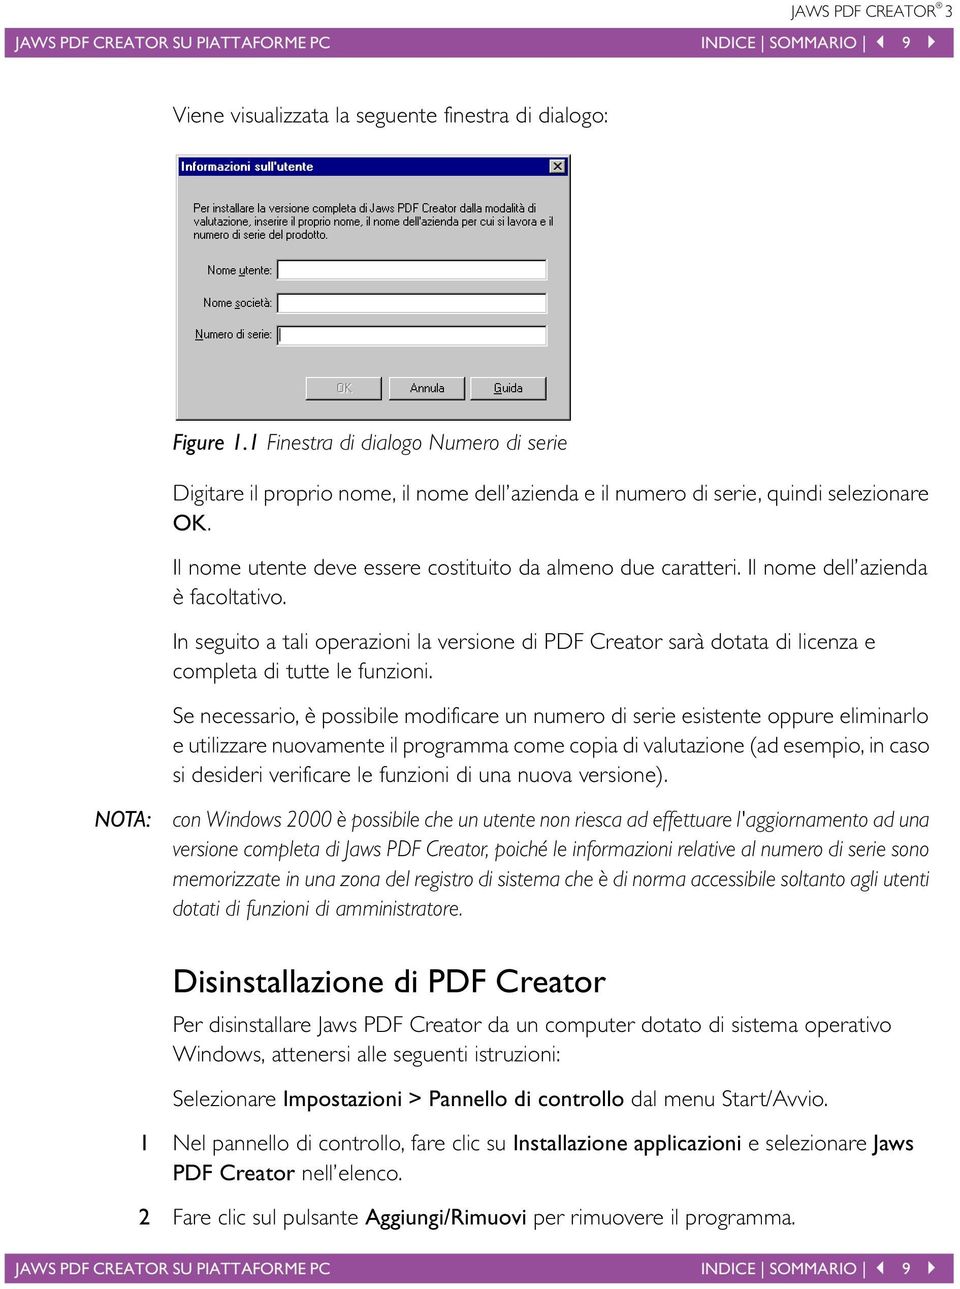 Il nome dell azienda è facoltativo. In seguito a tali operazioni la versione di PDF Creator sarà dotata di licenza e completa di tutte le funzioni.